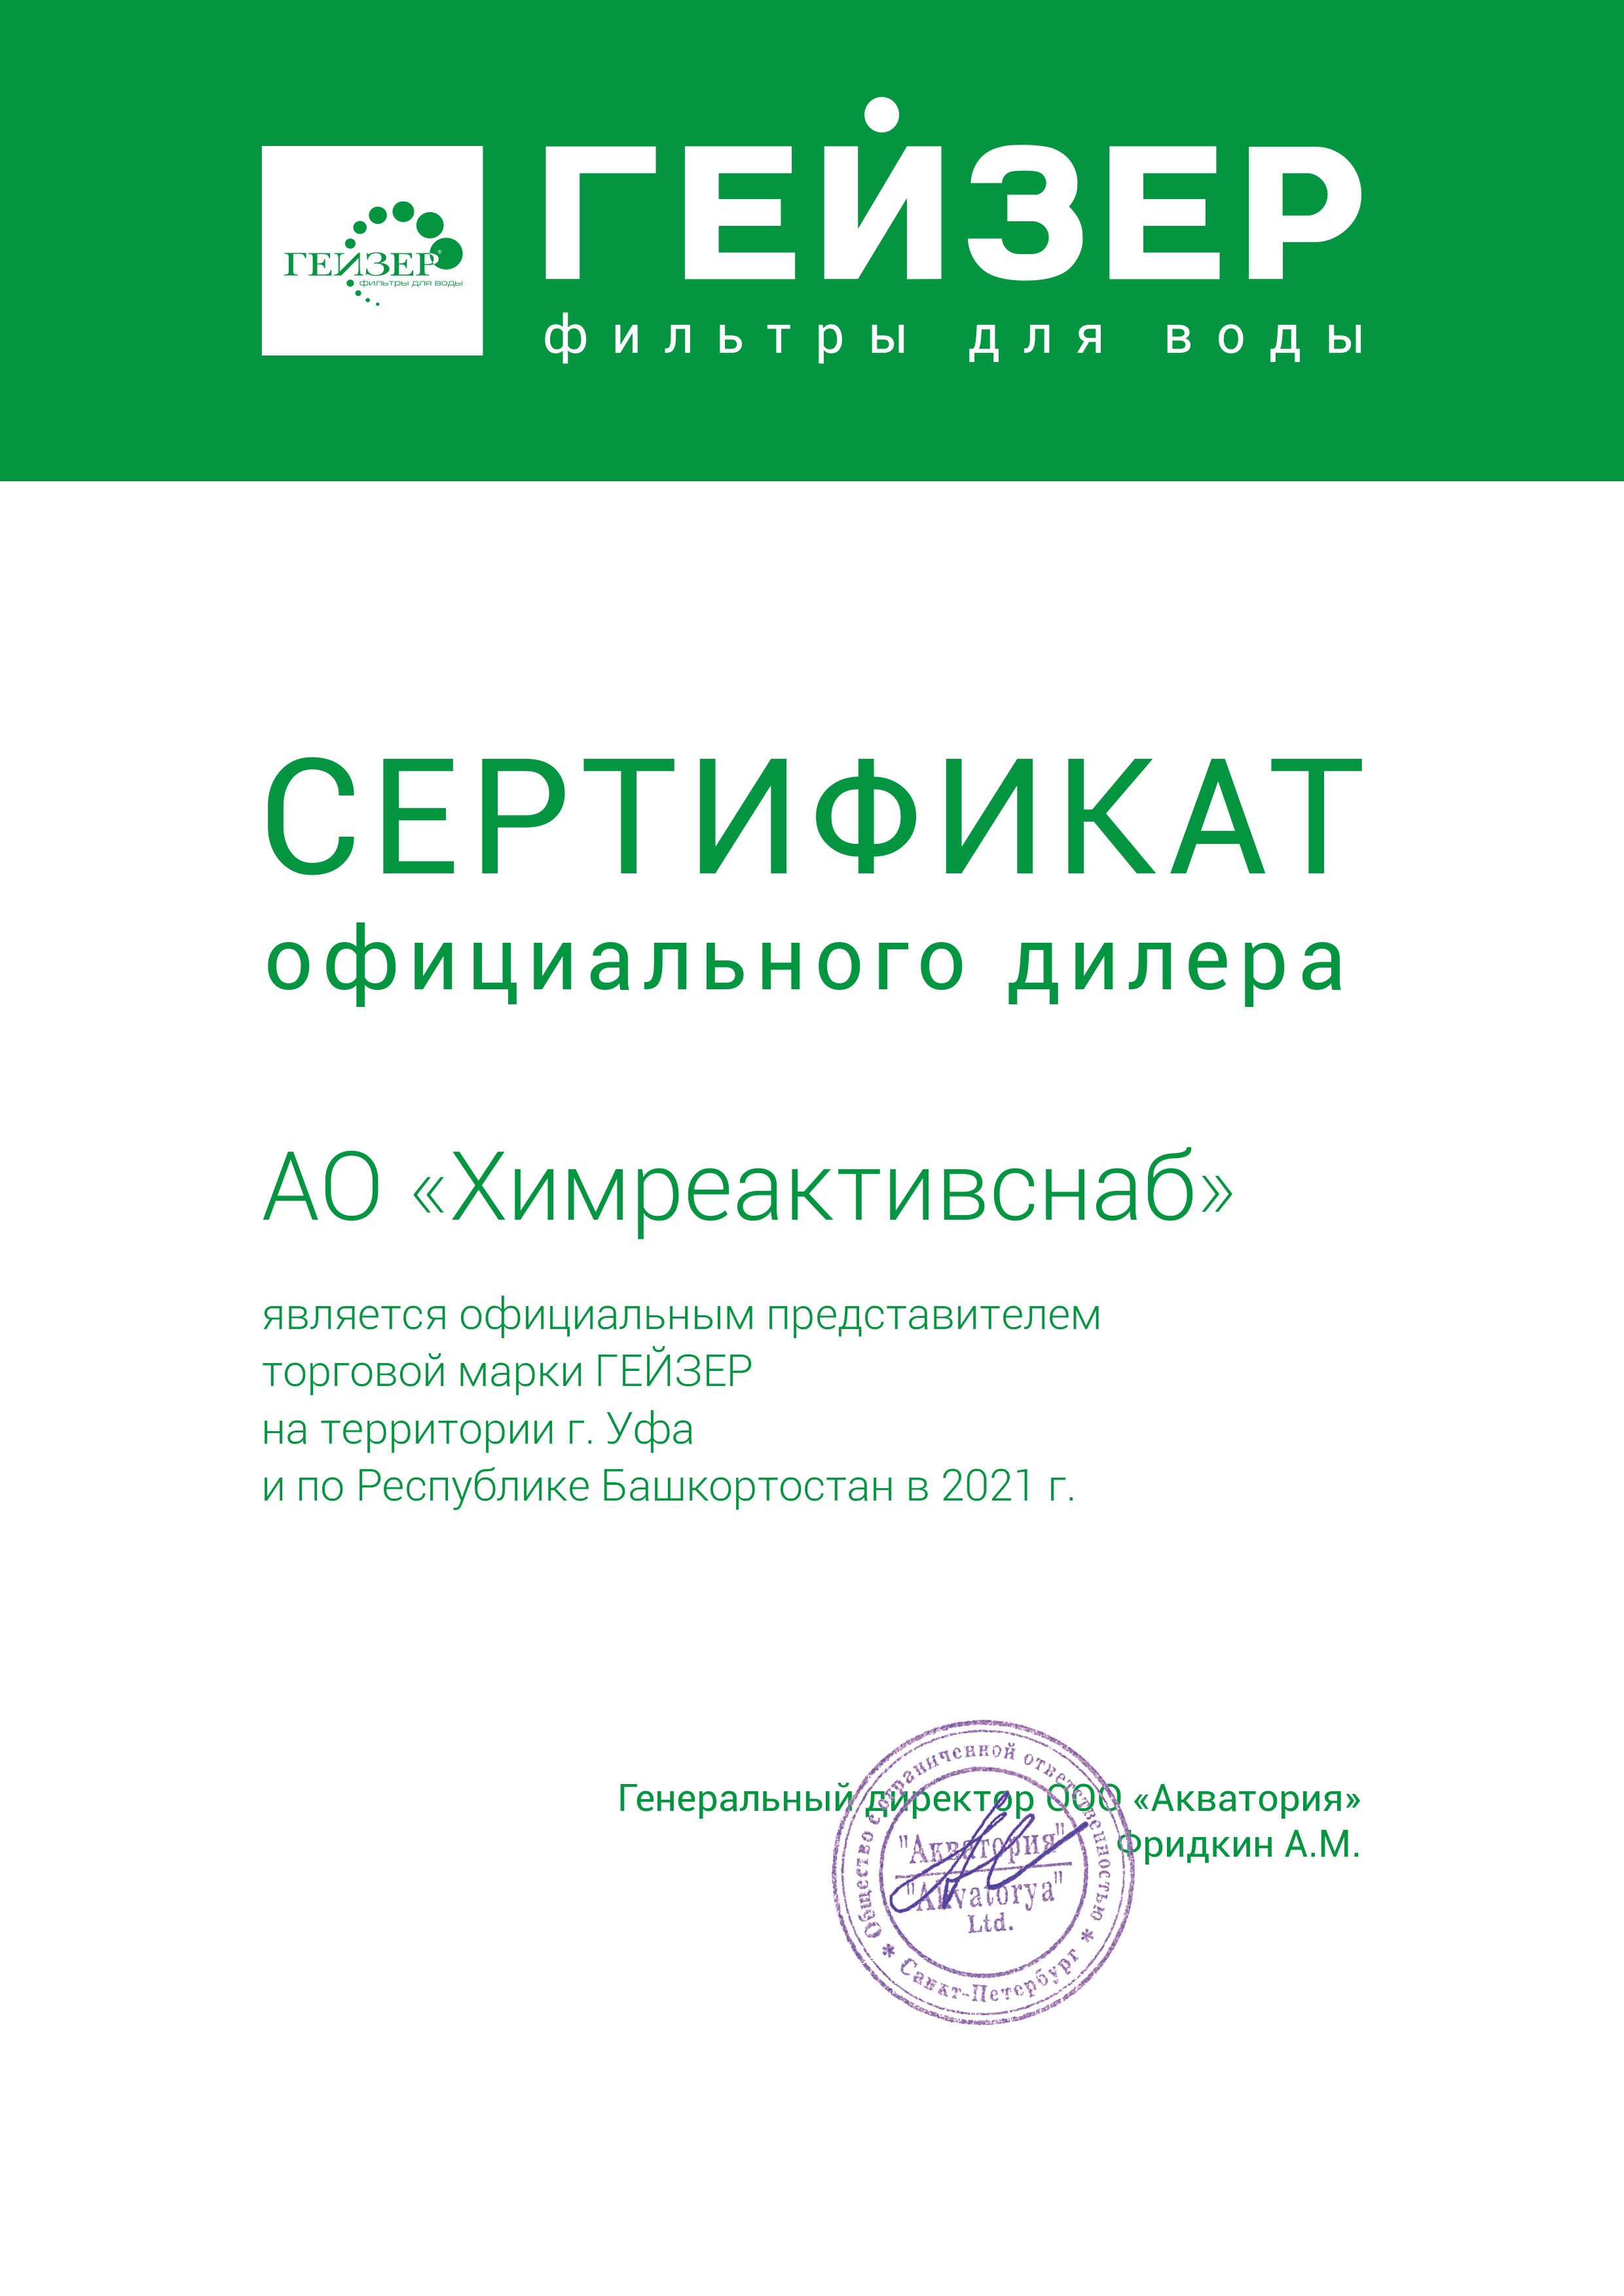 "Акватория" ООО, Сертификат официального дилера торговой марки "Гейзер"